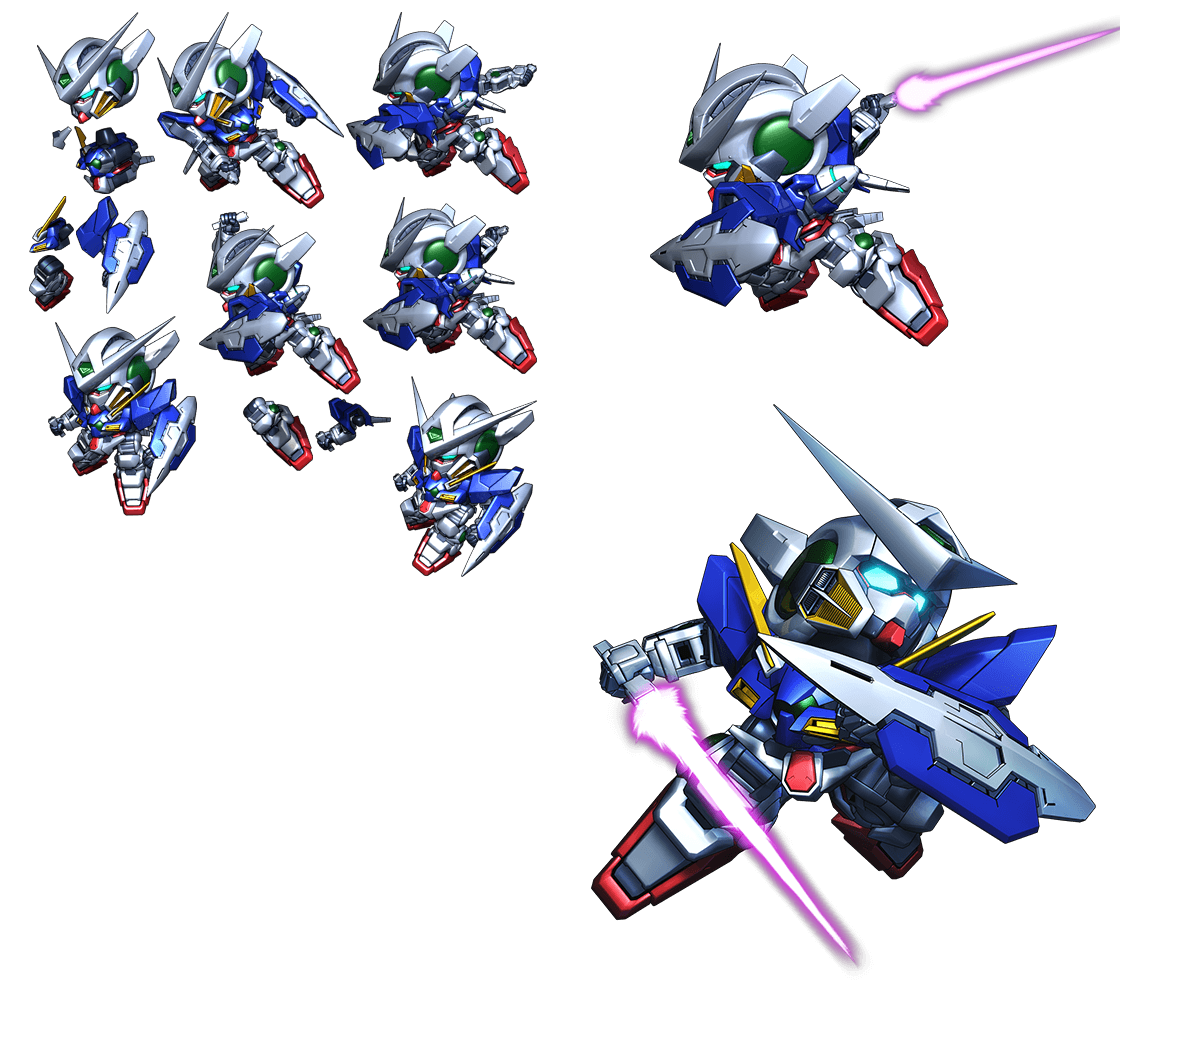 Super Gundam Royale - Gundam Exia (GN Beam Saber)